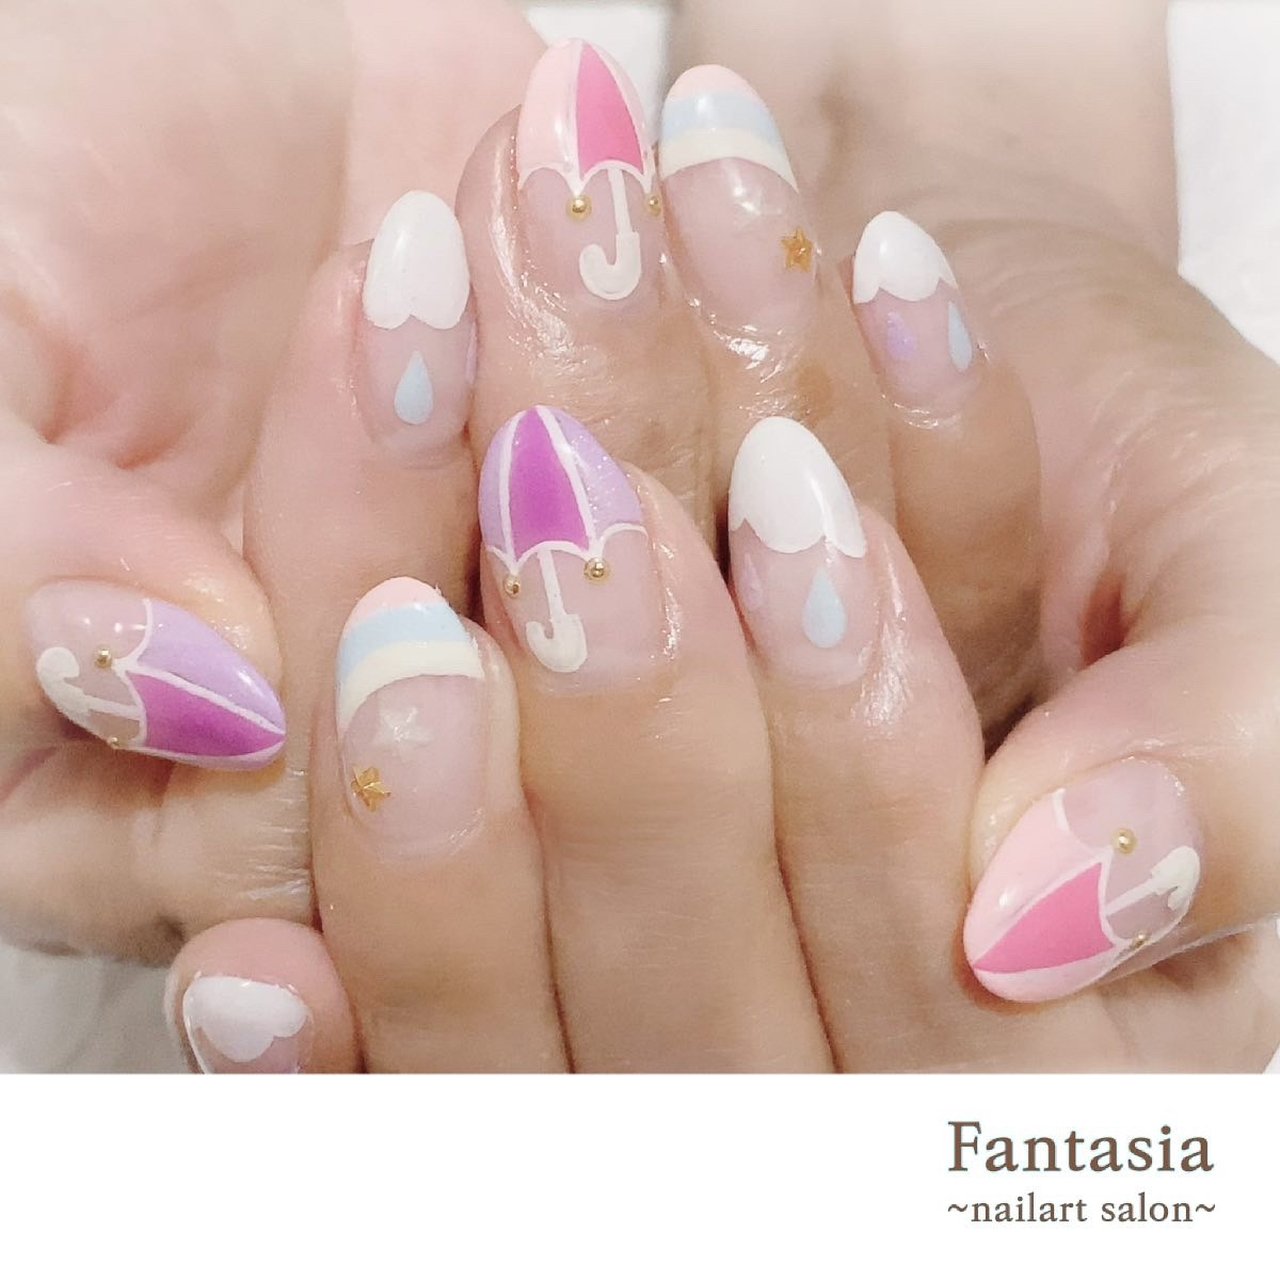 夏 梅雨 海 リゾート ハンド Fantasia By Pinaのネイルデザイン No ネイルブック